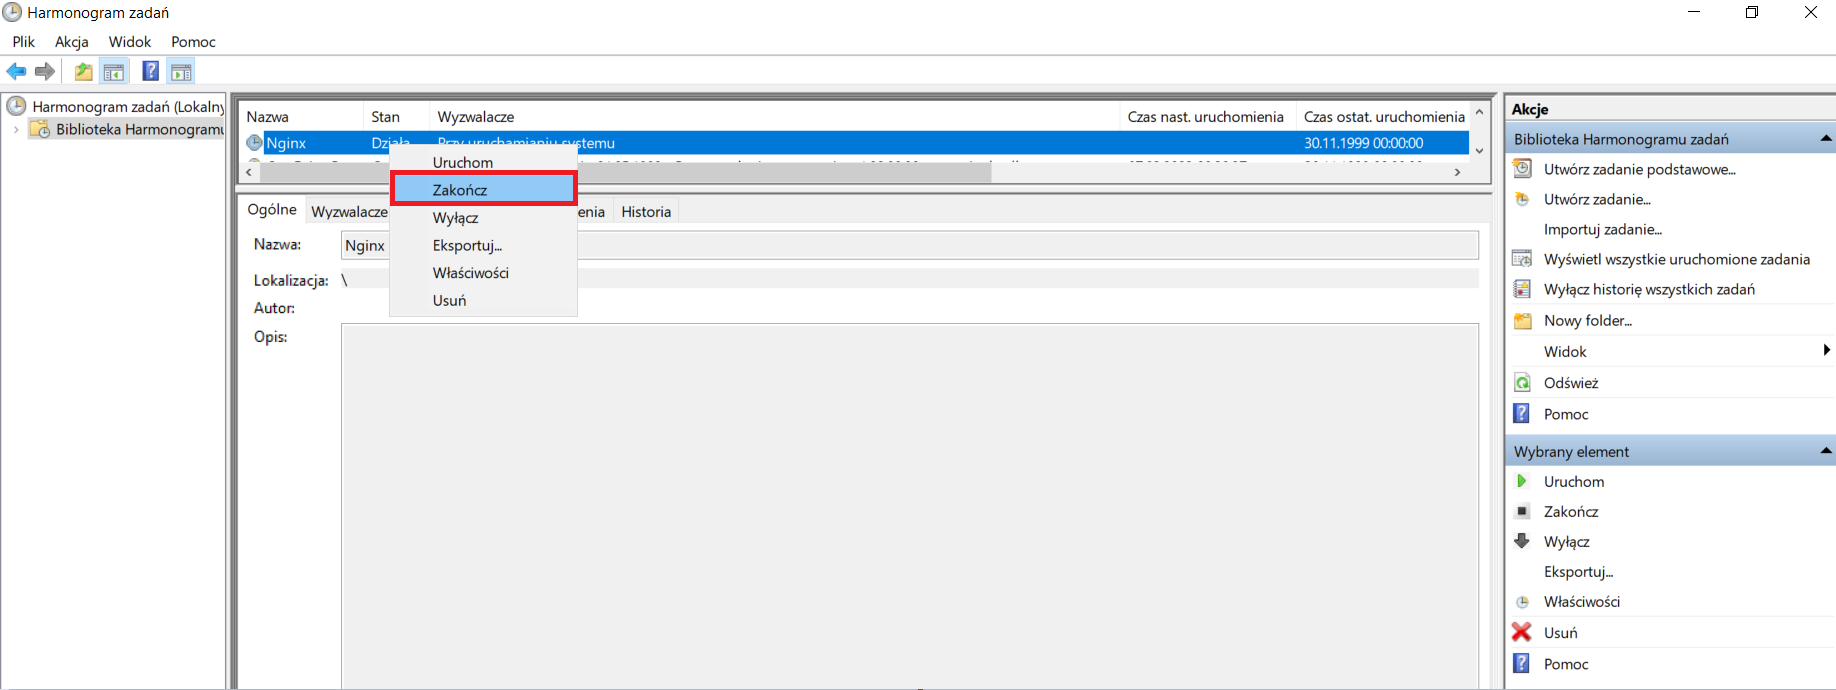 Przykład zakończenia usługi Nginx z poziomu Harmonogram zadań poprzez wybranie opcji z menu kontekstowego